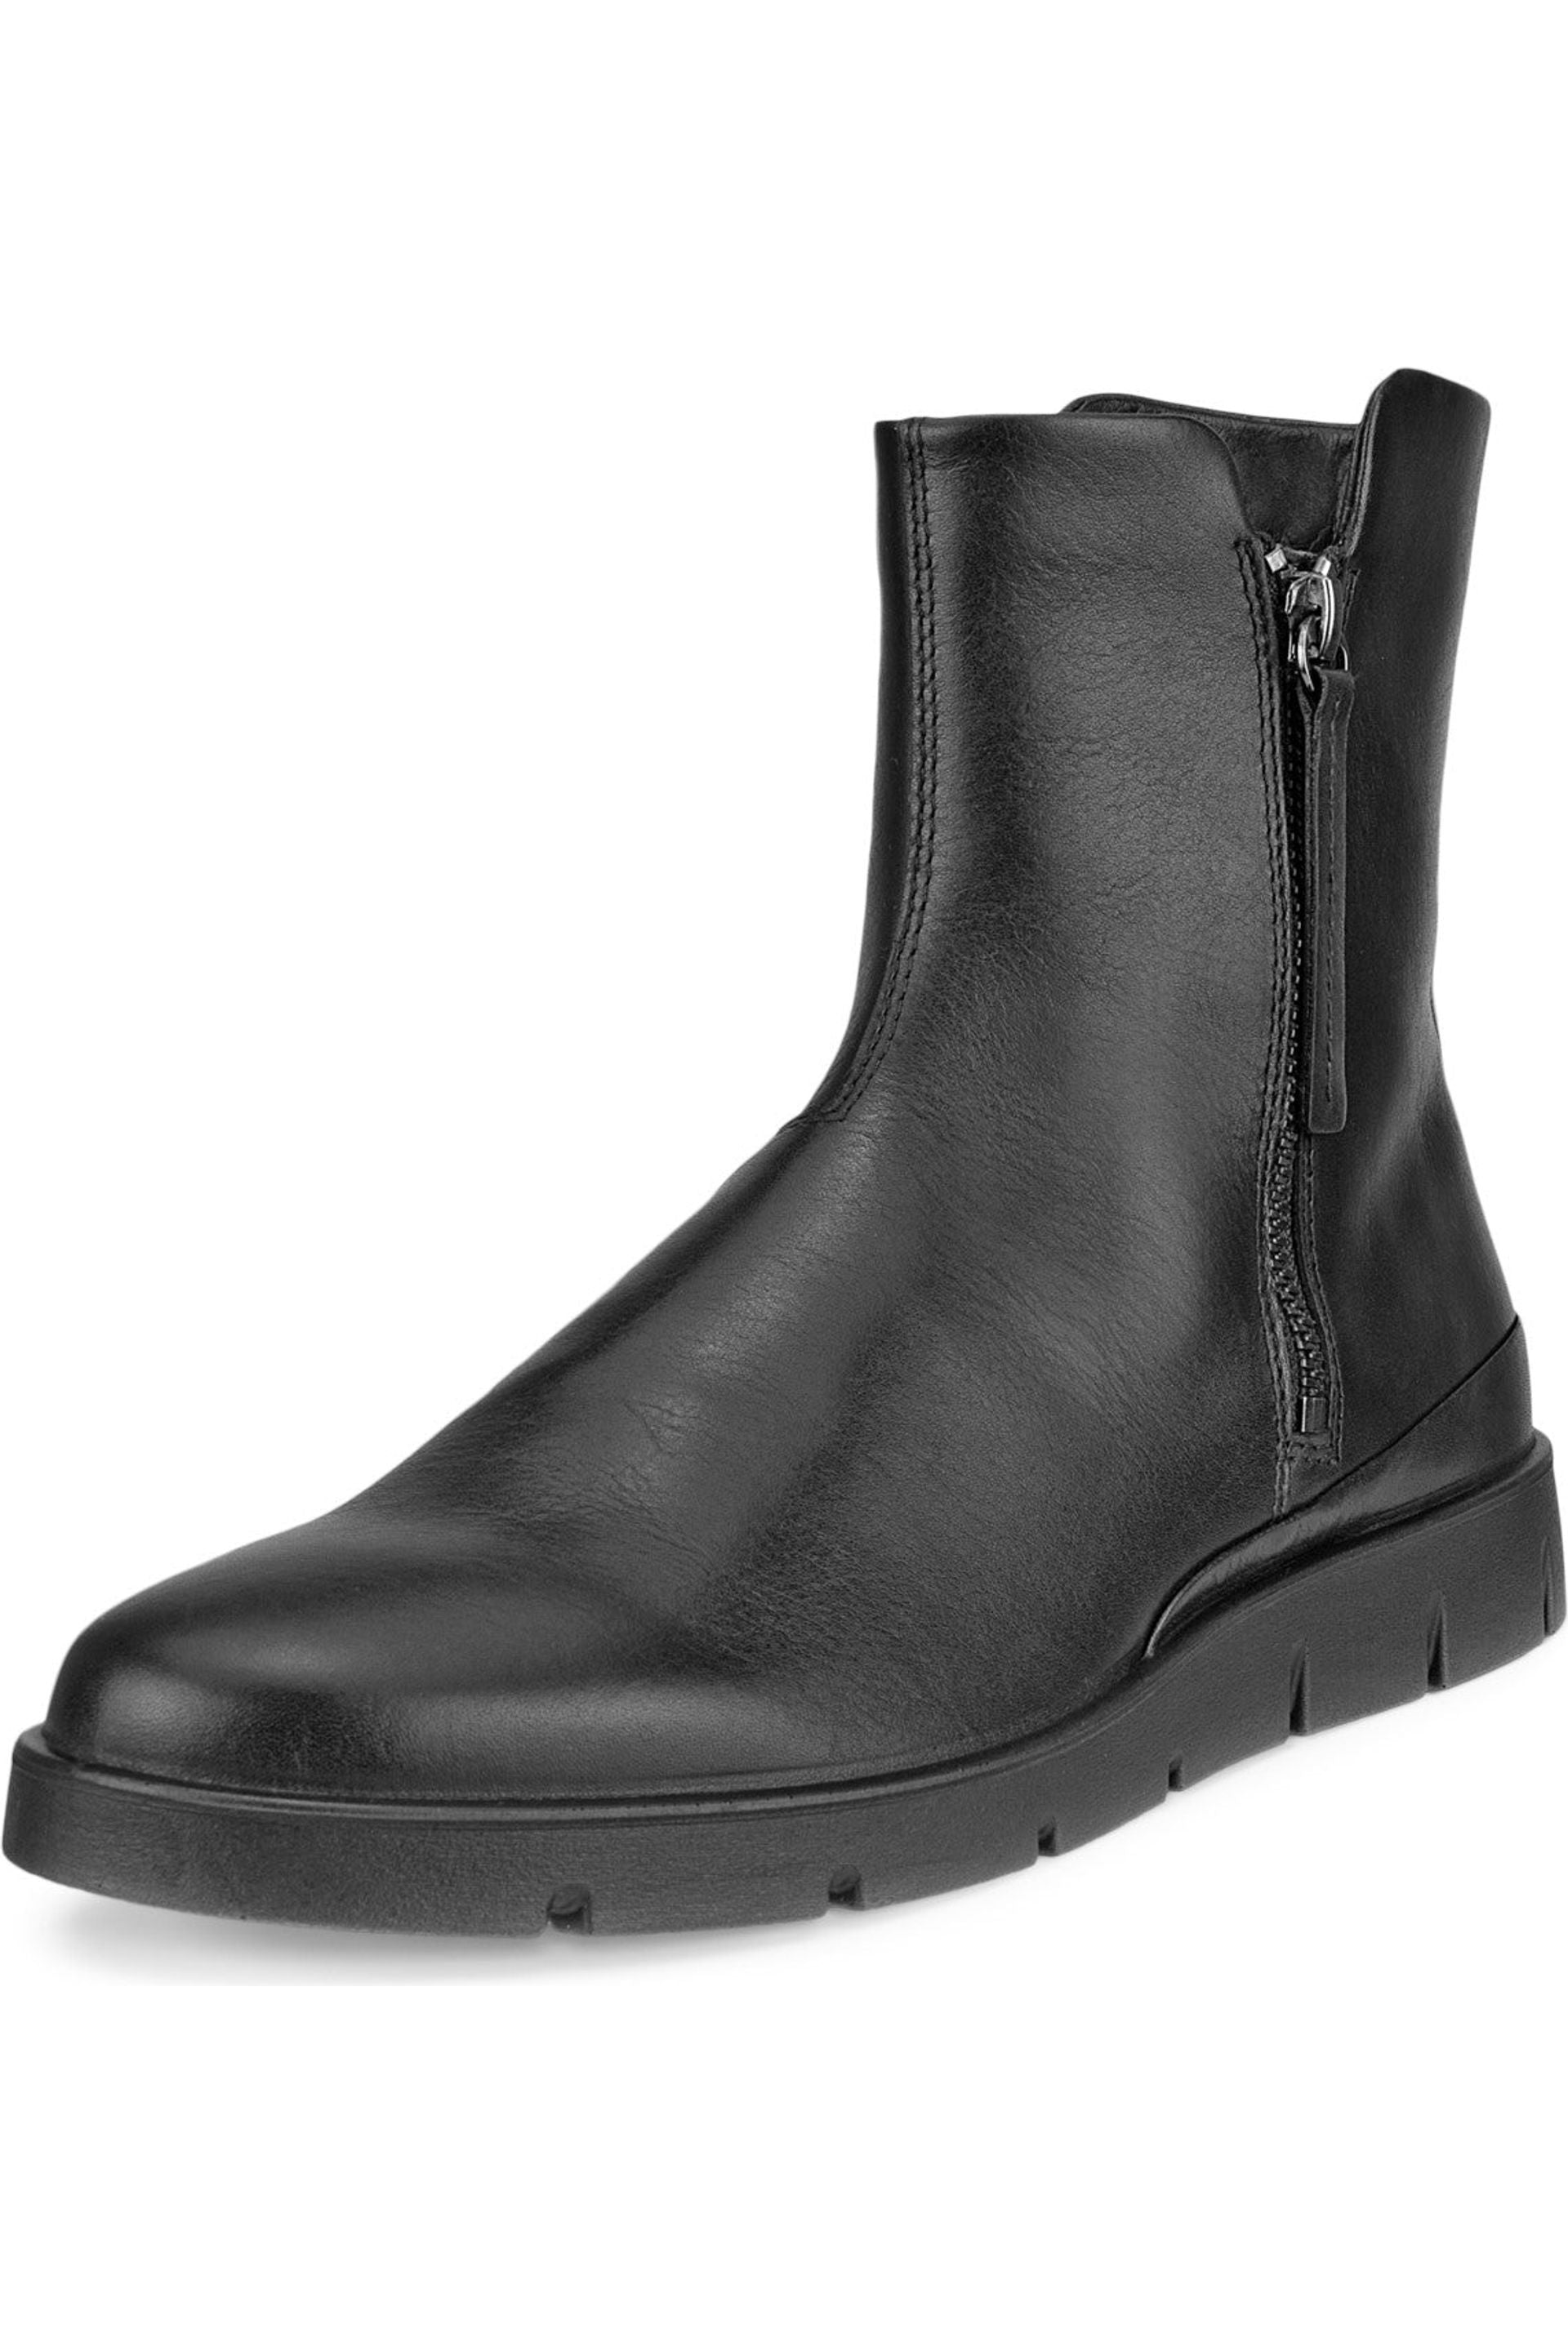 Forløber væv fintælling Ecco 282393-01001 winter boot - Meeks Shoes